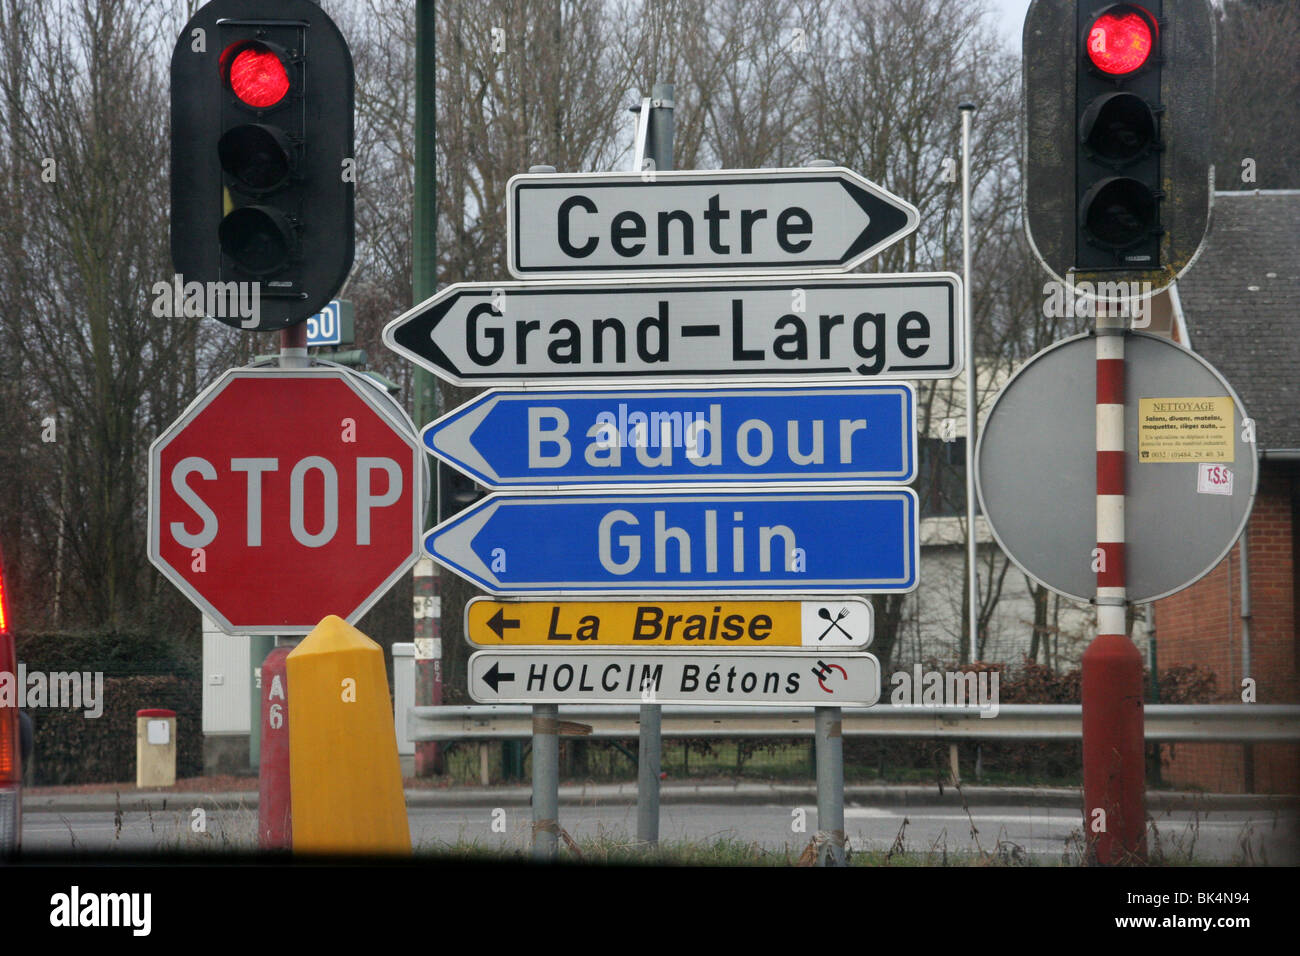 La signalisation routière en Belgique Banque D'Images